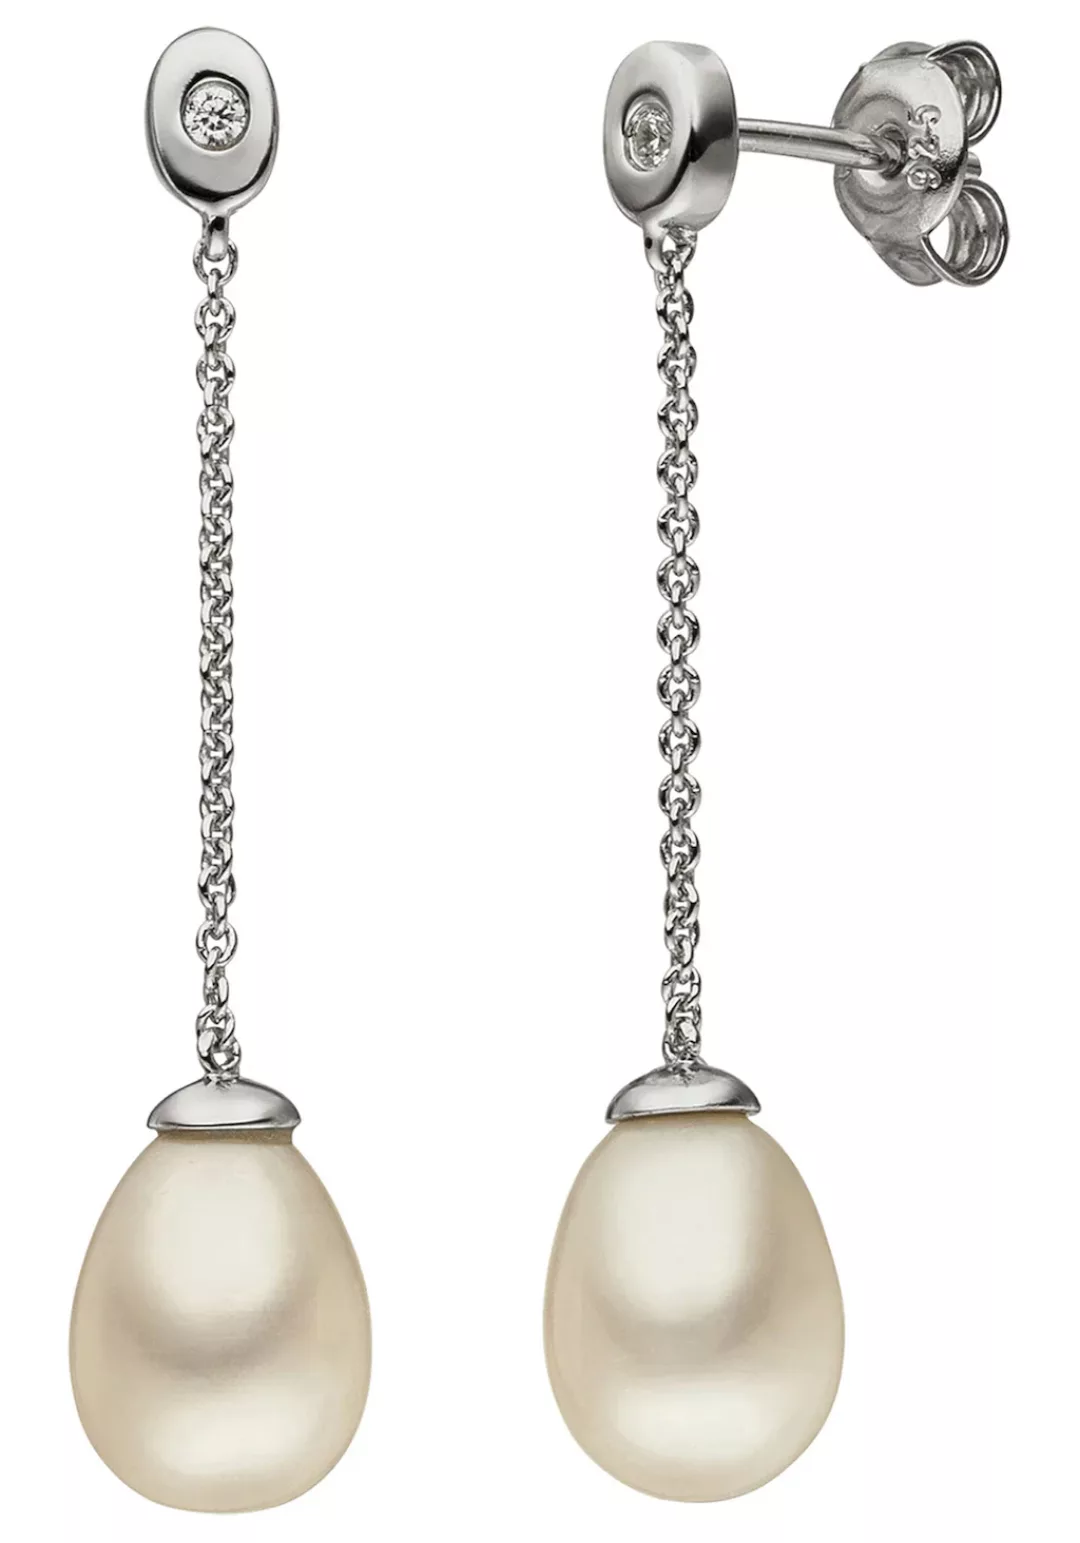 JOBO Perlenohrringe, 925 Silber mit Perlen und Zirkonia günstig online kaufen